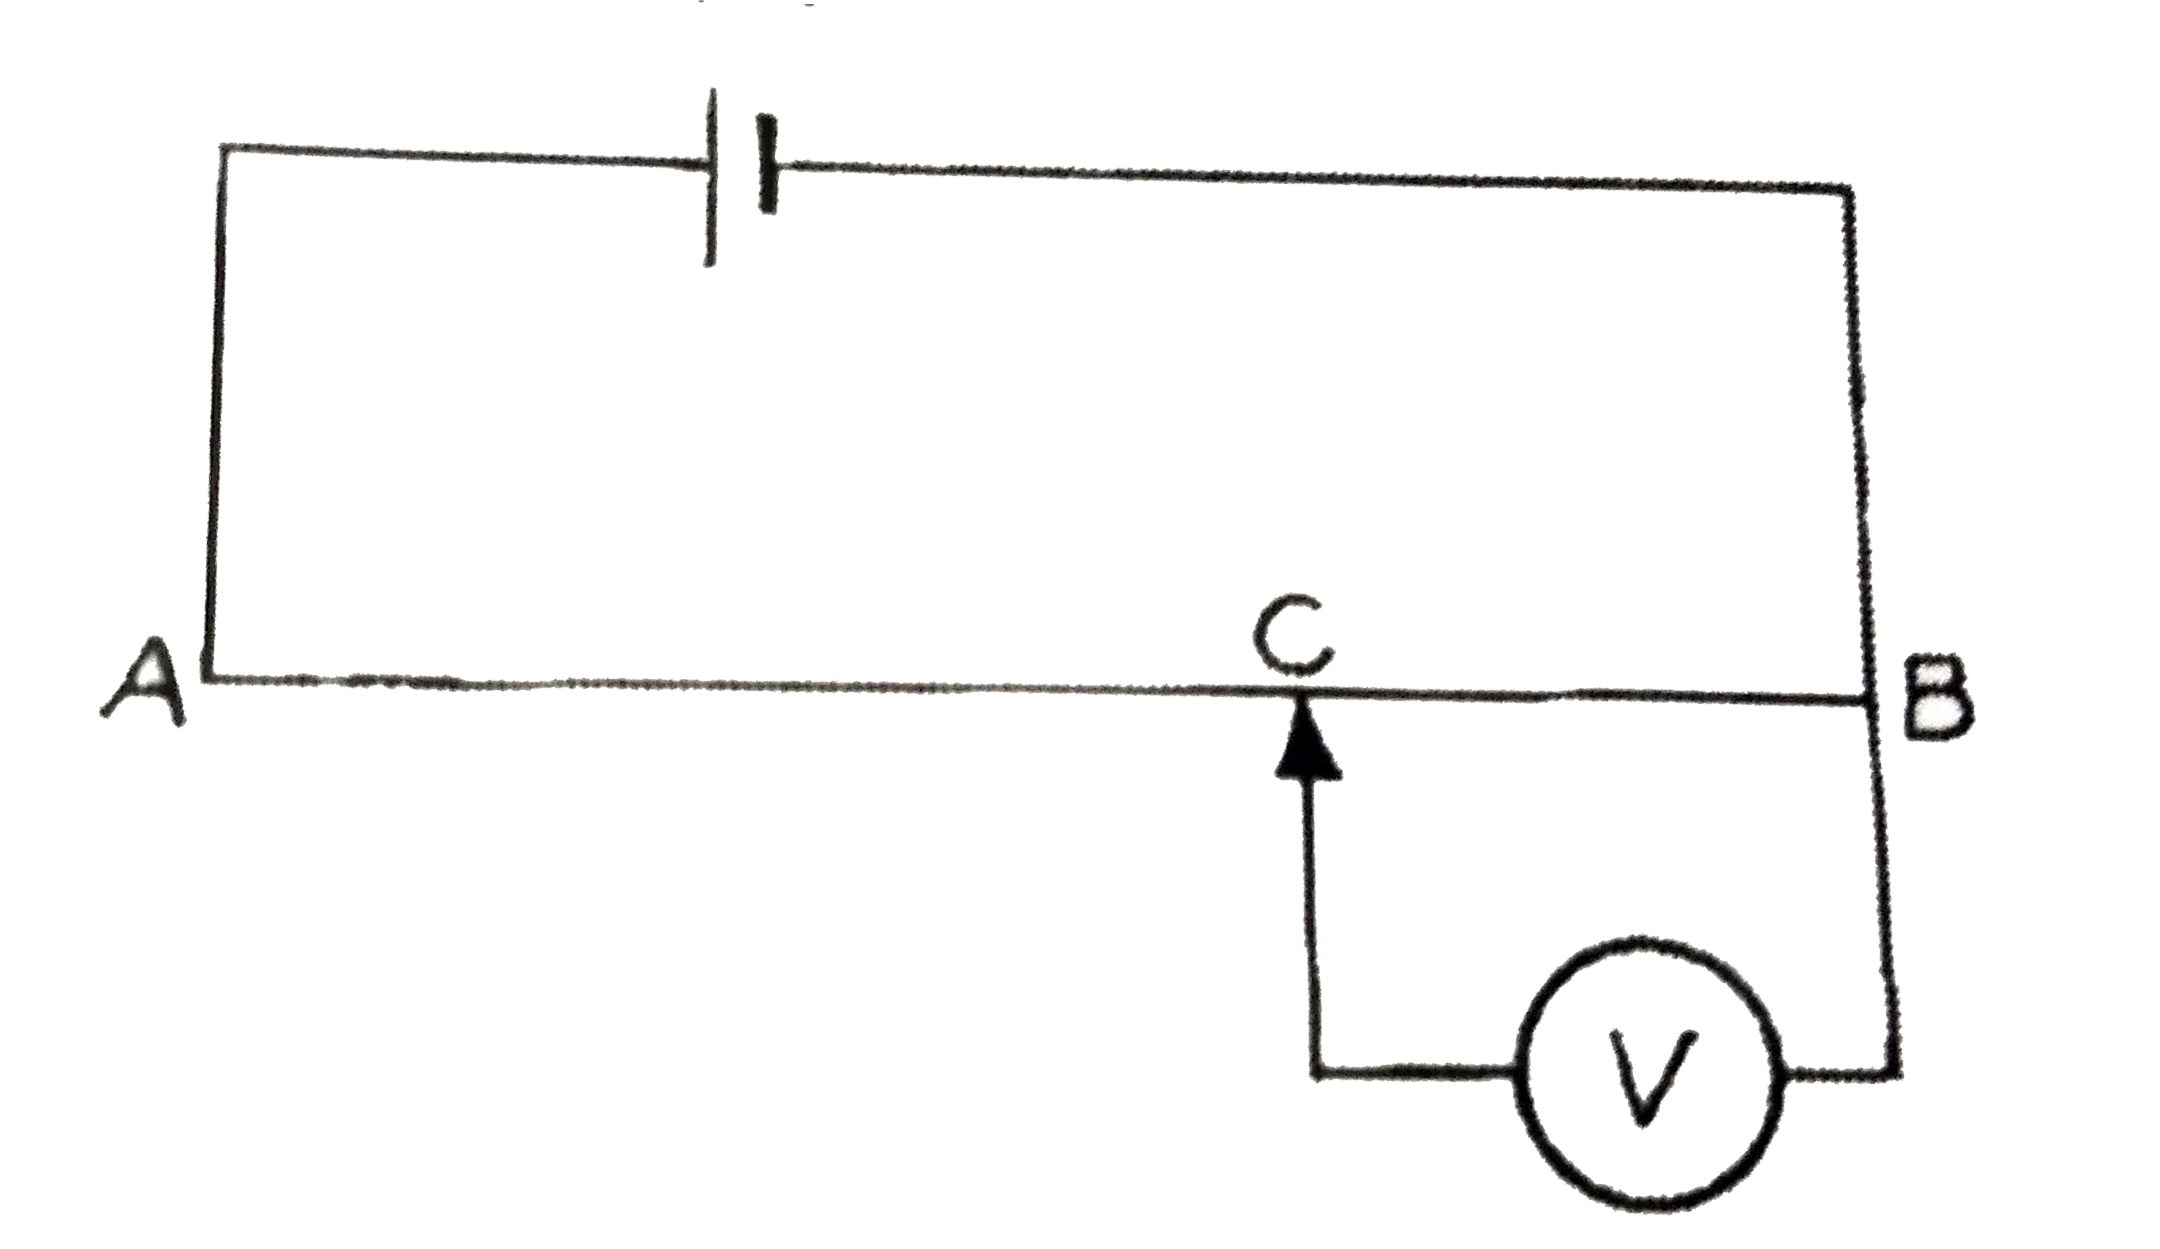 एक विभवमापी के तार AB  की लम्बाई  2 मीटर है । चित्रानुसार   नगण्य  आंतरिक प्रतिरोध  तथा 4 वोल्ट वैधुत वाहक बल की सेल तार AB  के बीच  जोड़ी गई है । ज्ञात कीजिए  :   (i) विभवमापी के तार की विभव प्रवणता   (ii) आदर्श वोल्टमीटर  V का पाठ्यांक जब  BC = 80 सेमी ।